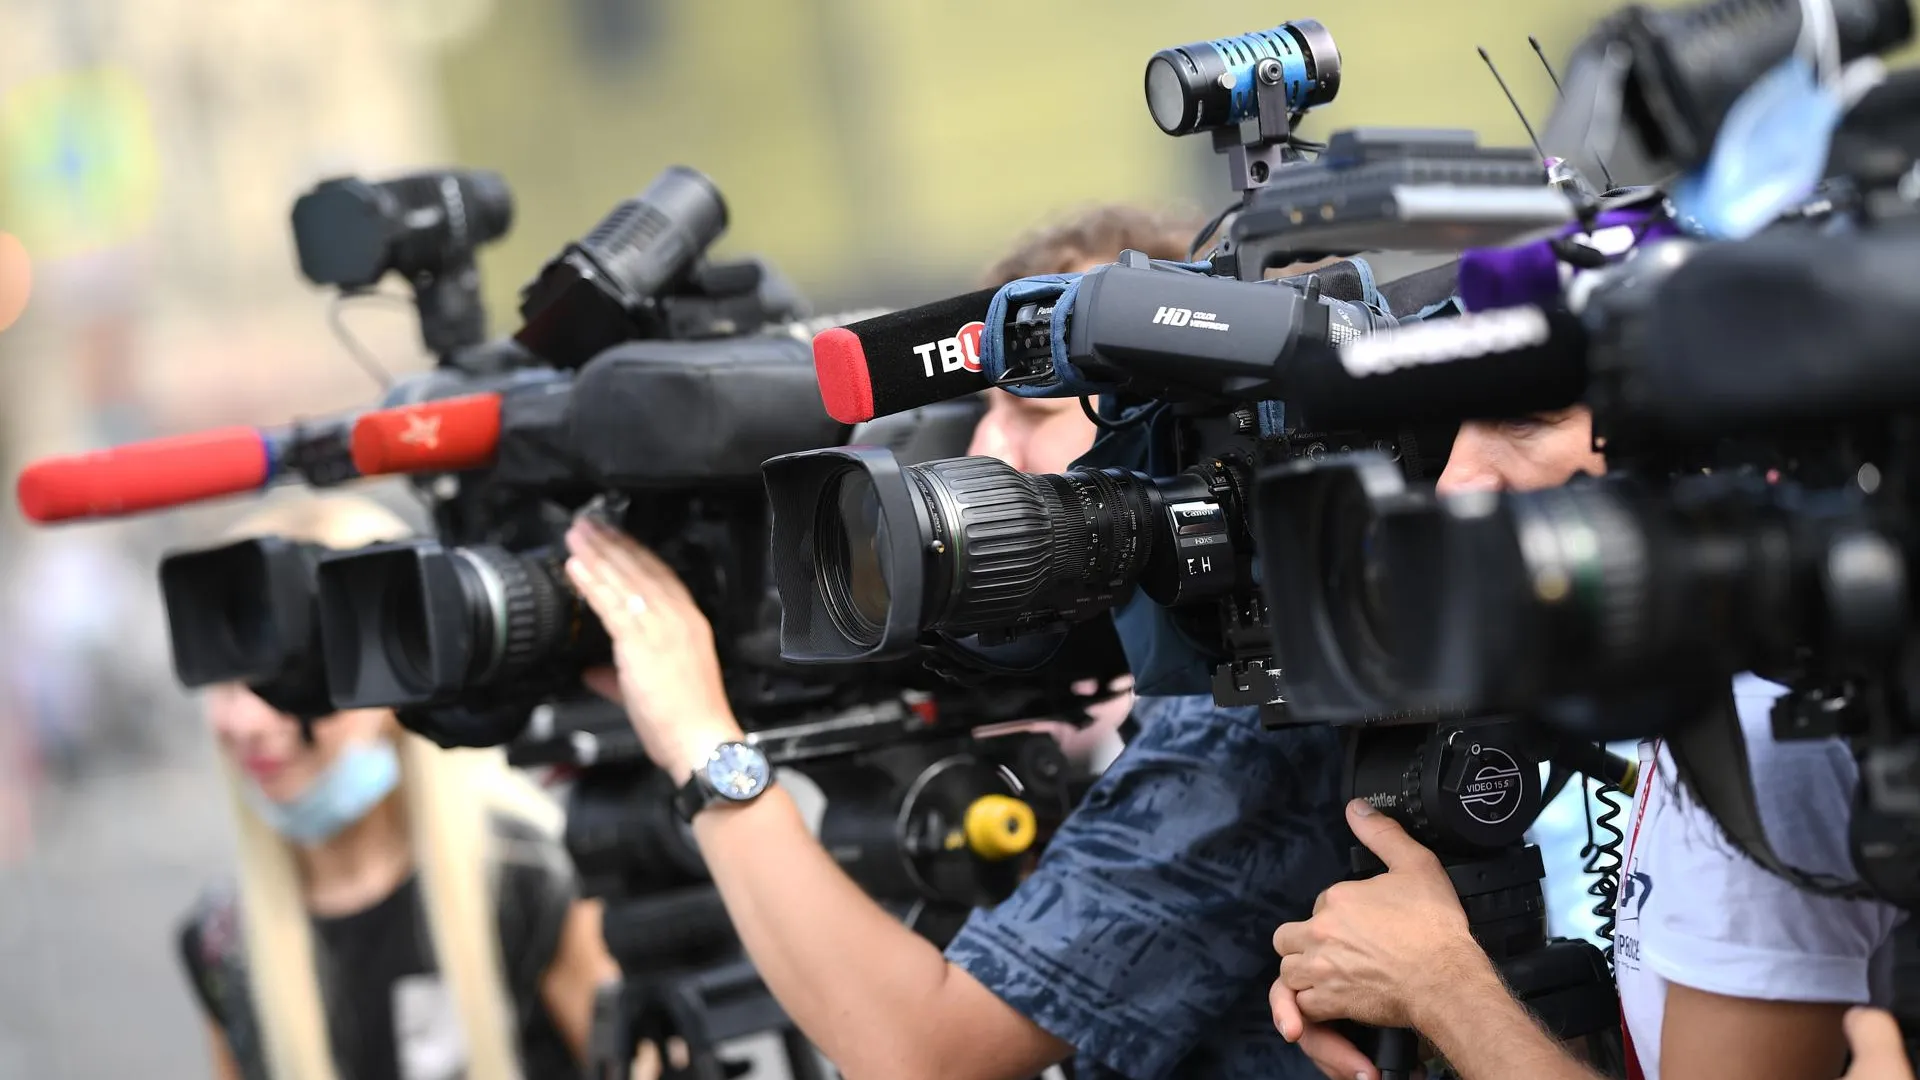 Медиатехнолог Серебряный дал советы юным журналистам на встрече в Москве